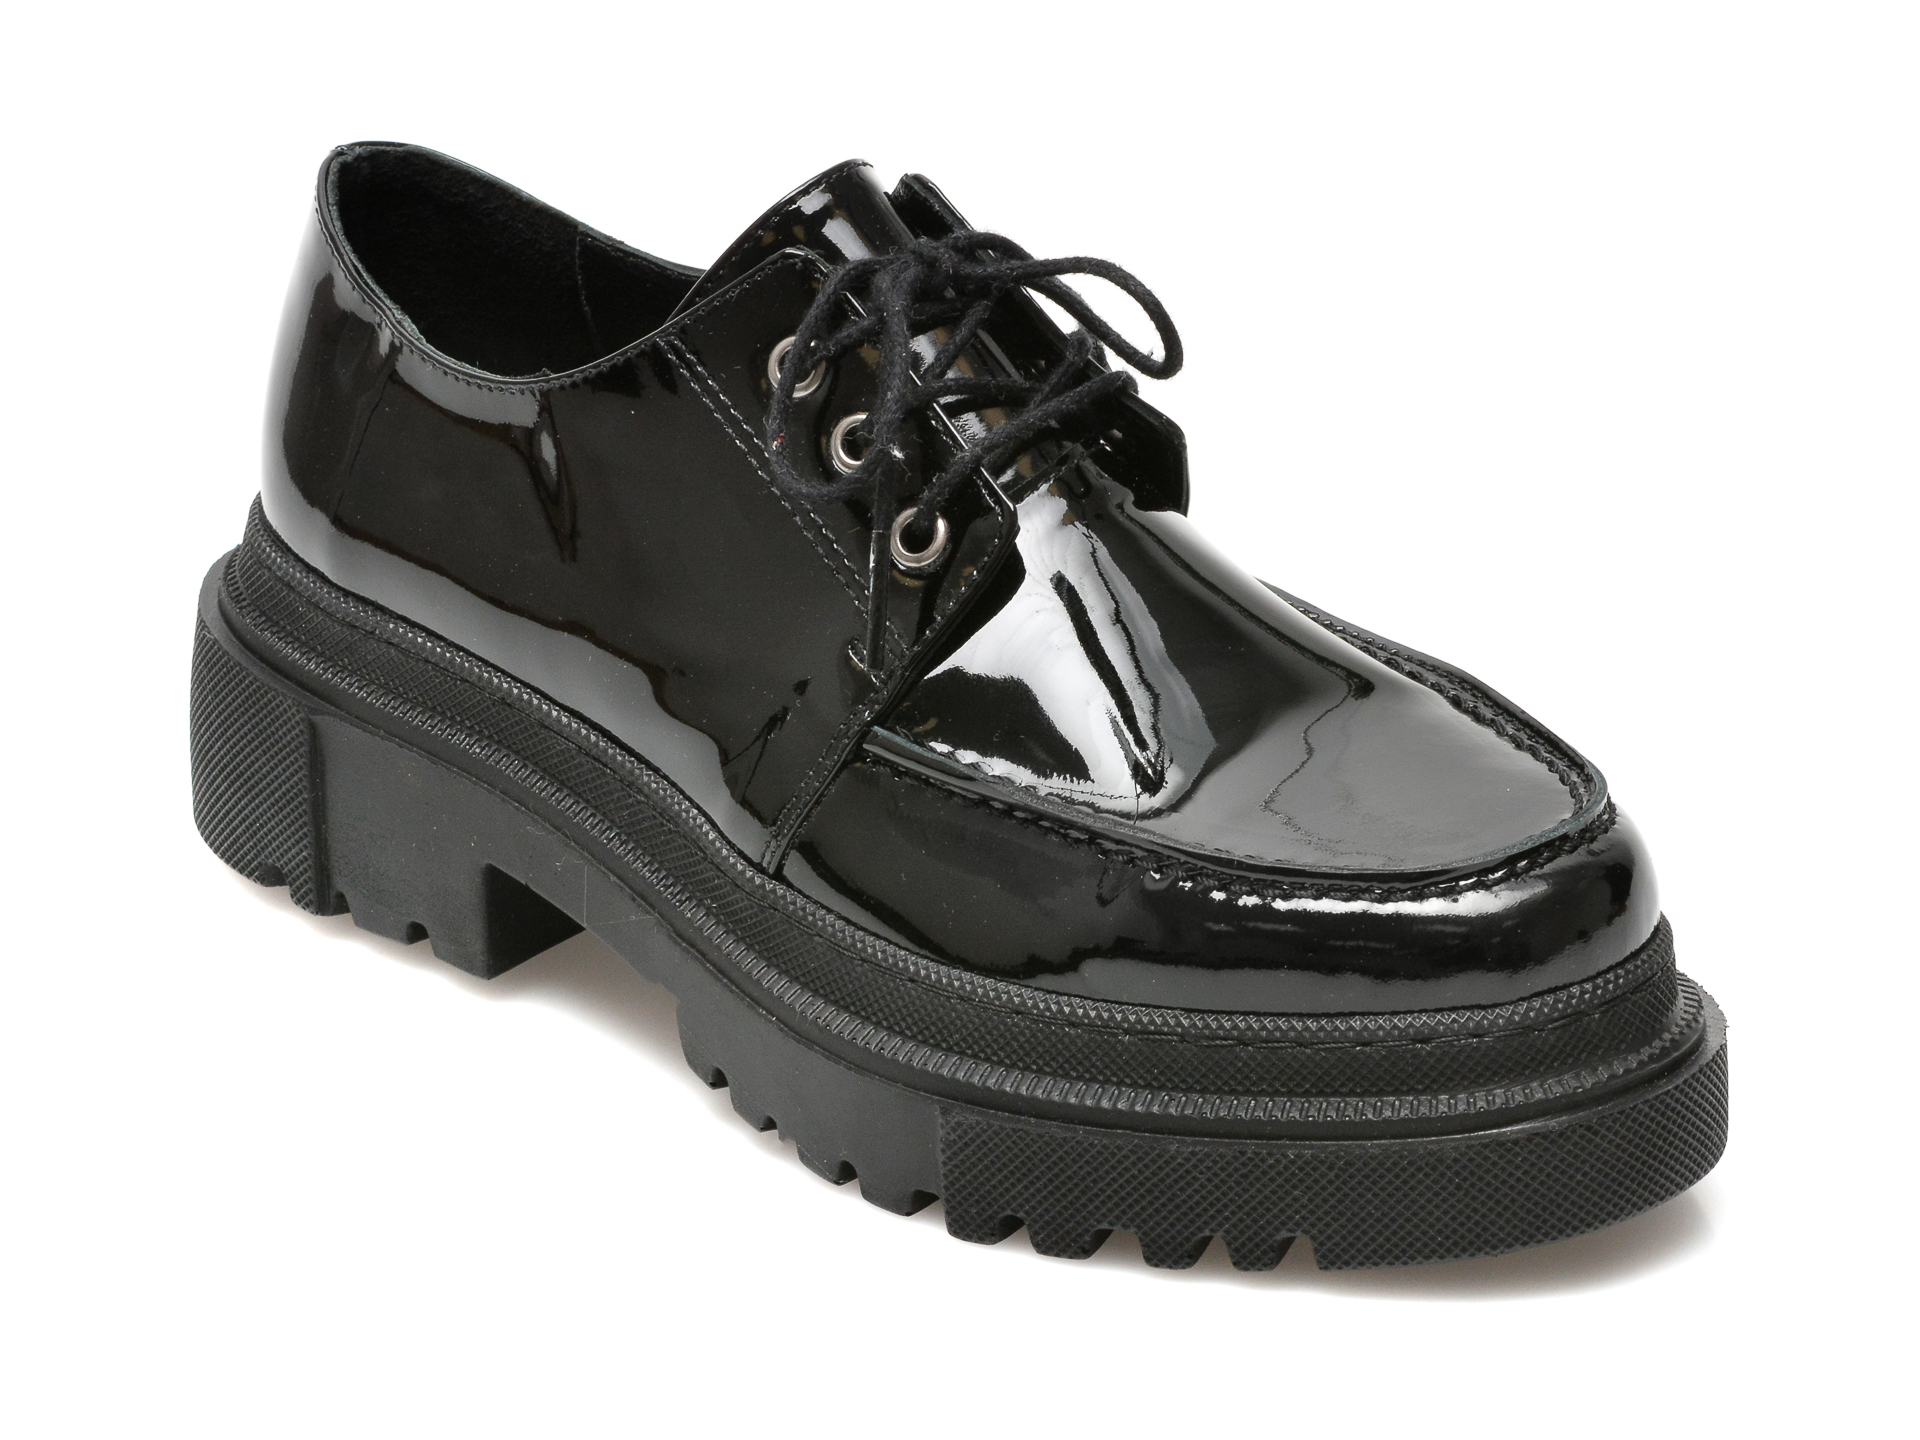 Pantofi FLAVIA PASSINI negri, 21900, din piele naturala lacuita Flavia Passini imagine noua